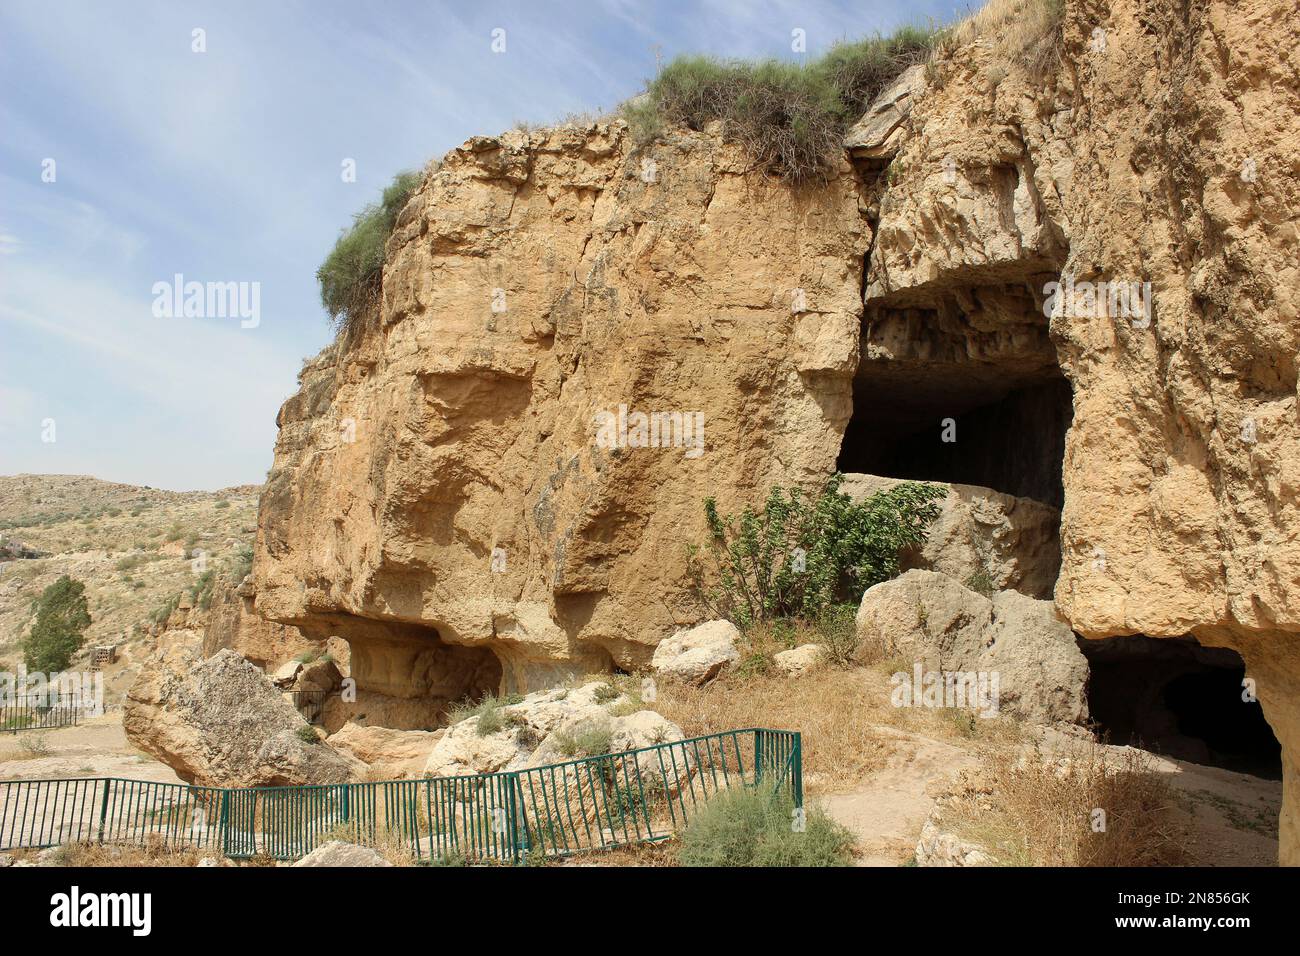 Iraq al-Amir Caves, Jordania Foto de stock